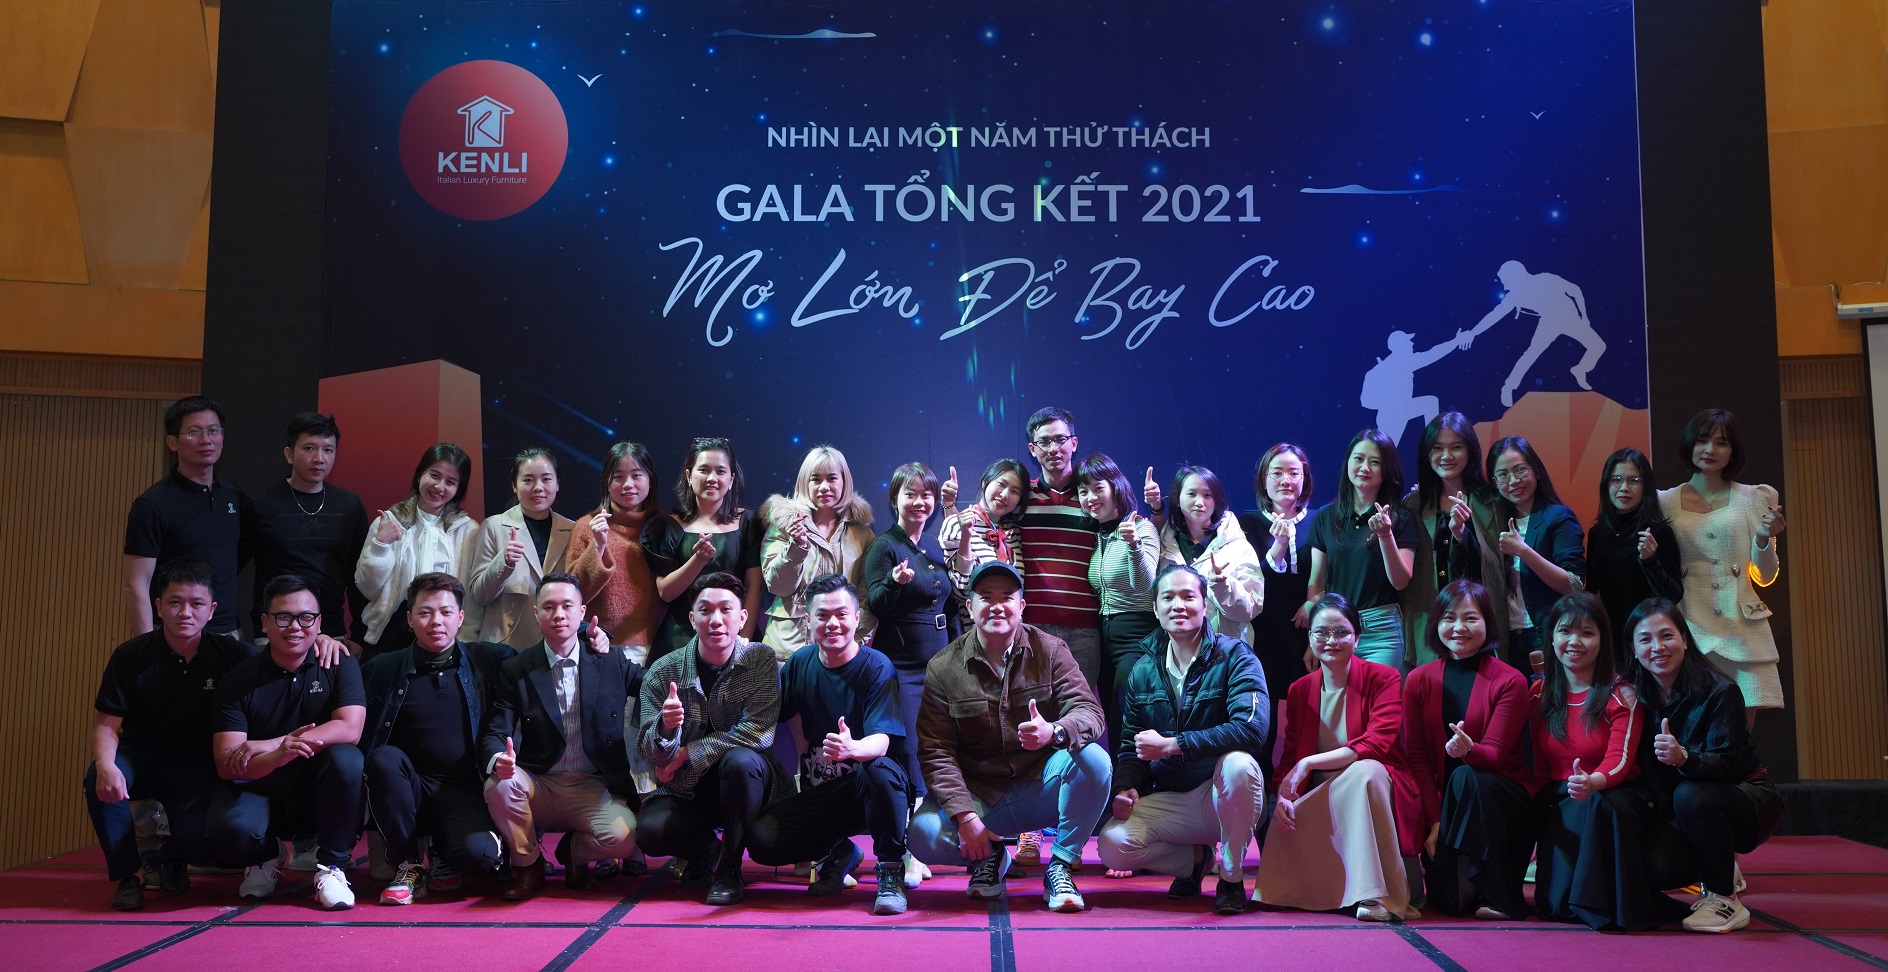 Gala Tổng Kết 2021- Mơ Lớn Để Bay Cao